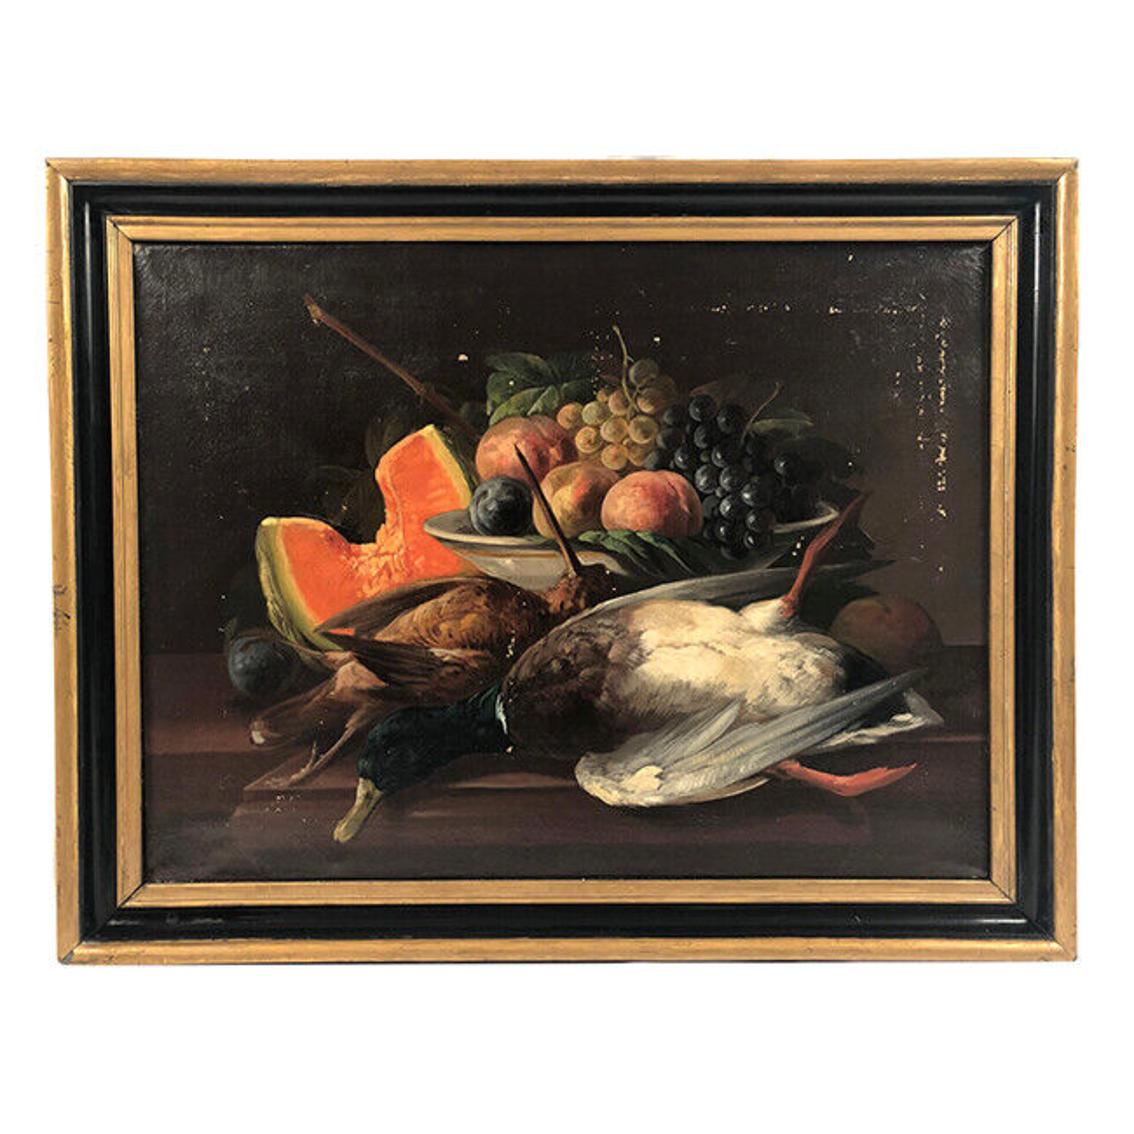 Unknown Still-Life Painting - Nature morte, huile sur toile encadrée, XIXe